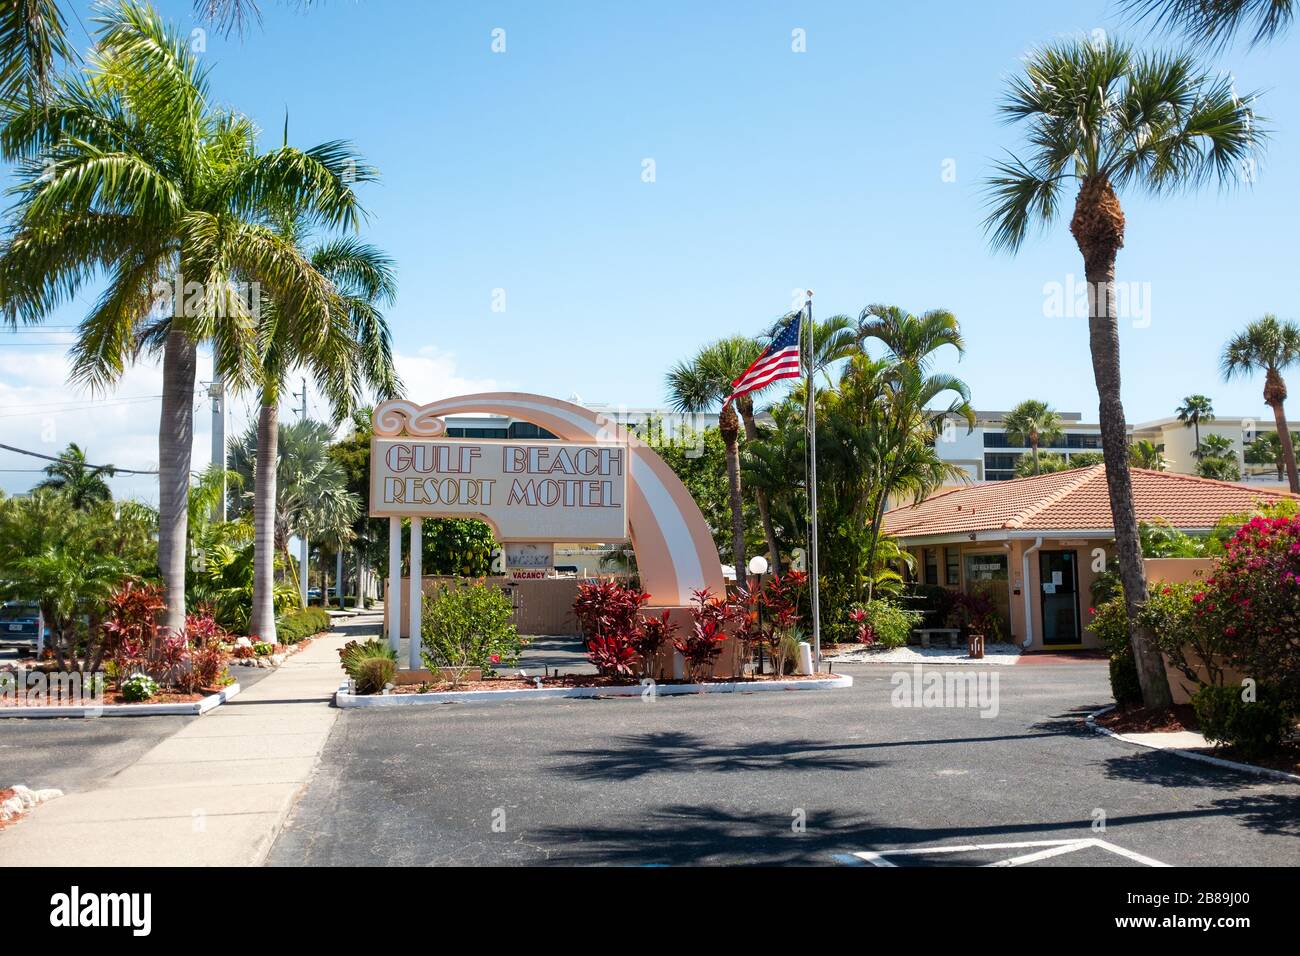 Das Gulf Beach Resort Motel auf Lido Key in Sarasota Florida, Vereinigte Staaten ist ein Beispiel für Motels, die in der Gegend gebaut wurden, nachdem WW2 dasselbe Design beibehalten hatte. Stockfoto